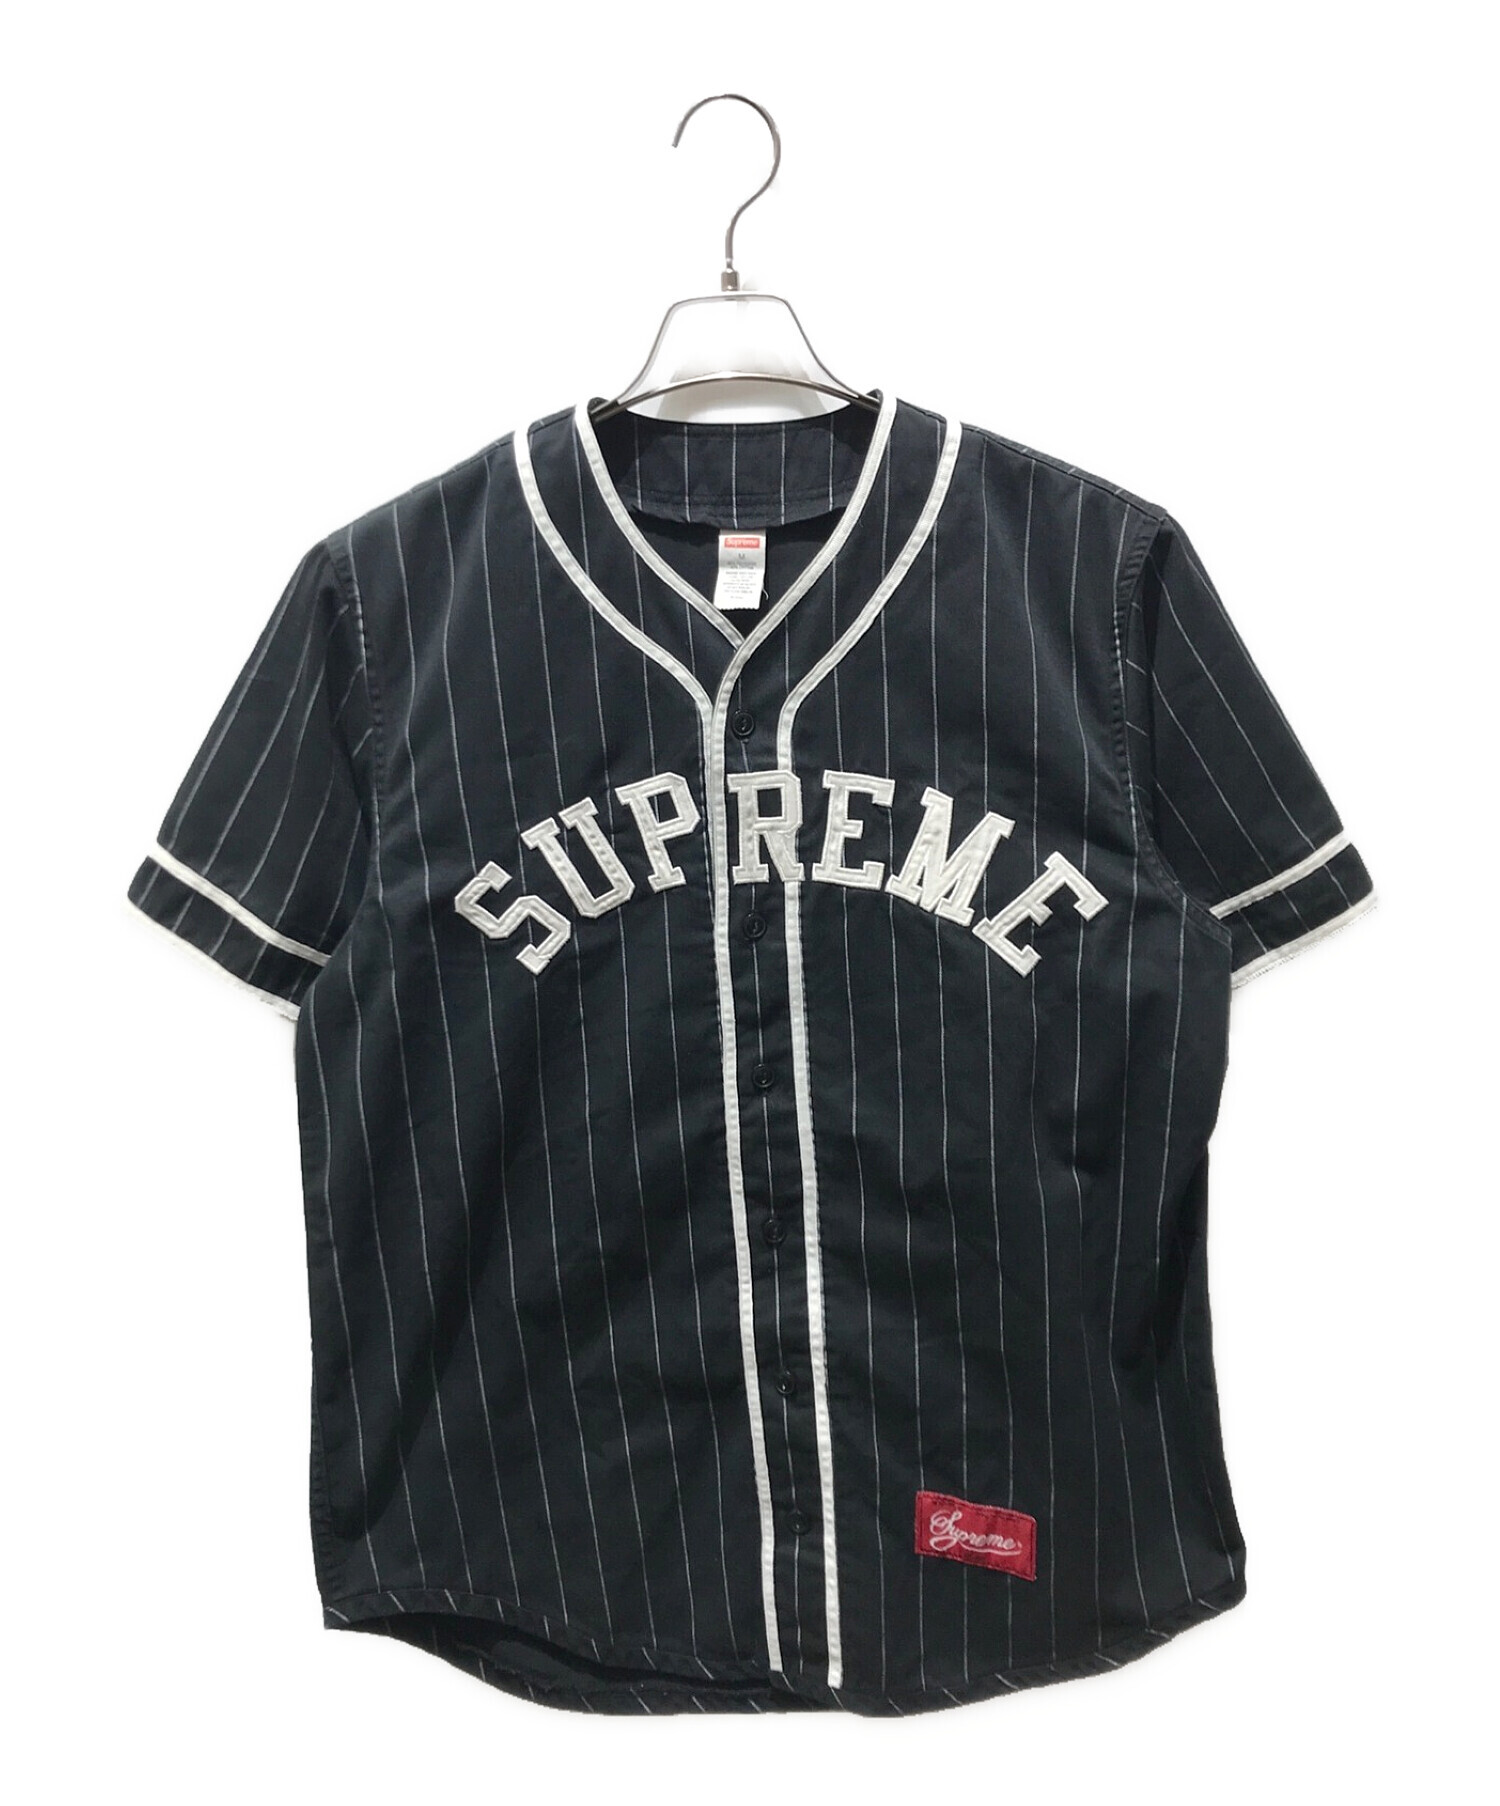 23,396円Supreme Baseball Jersey 12SS